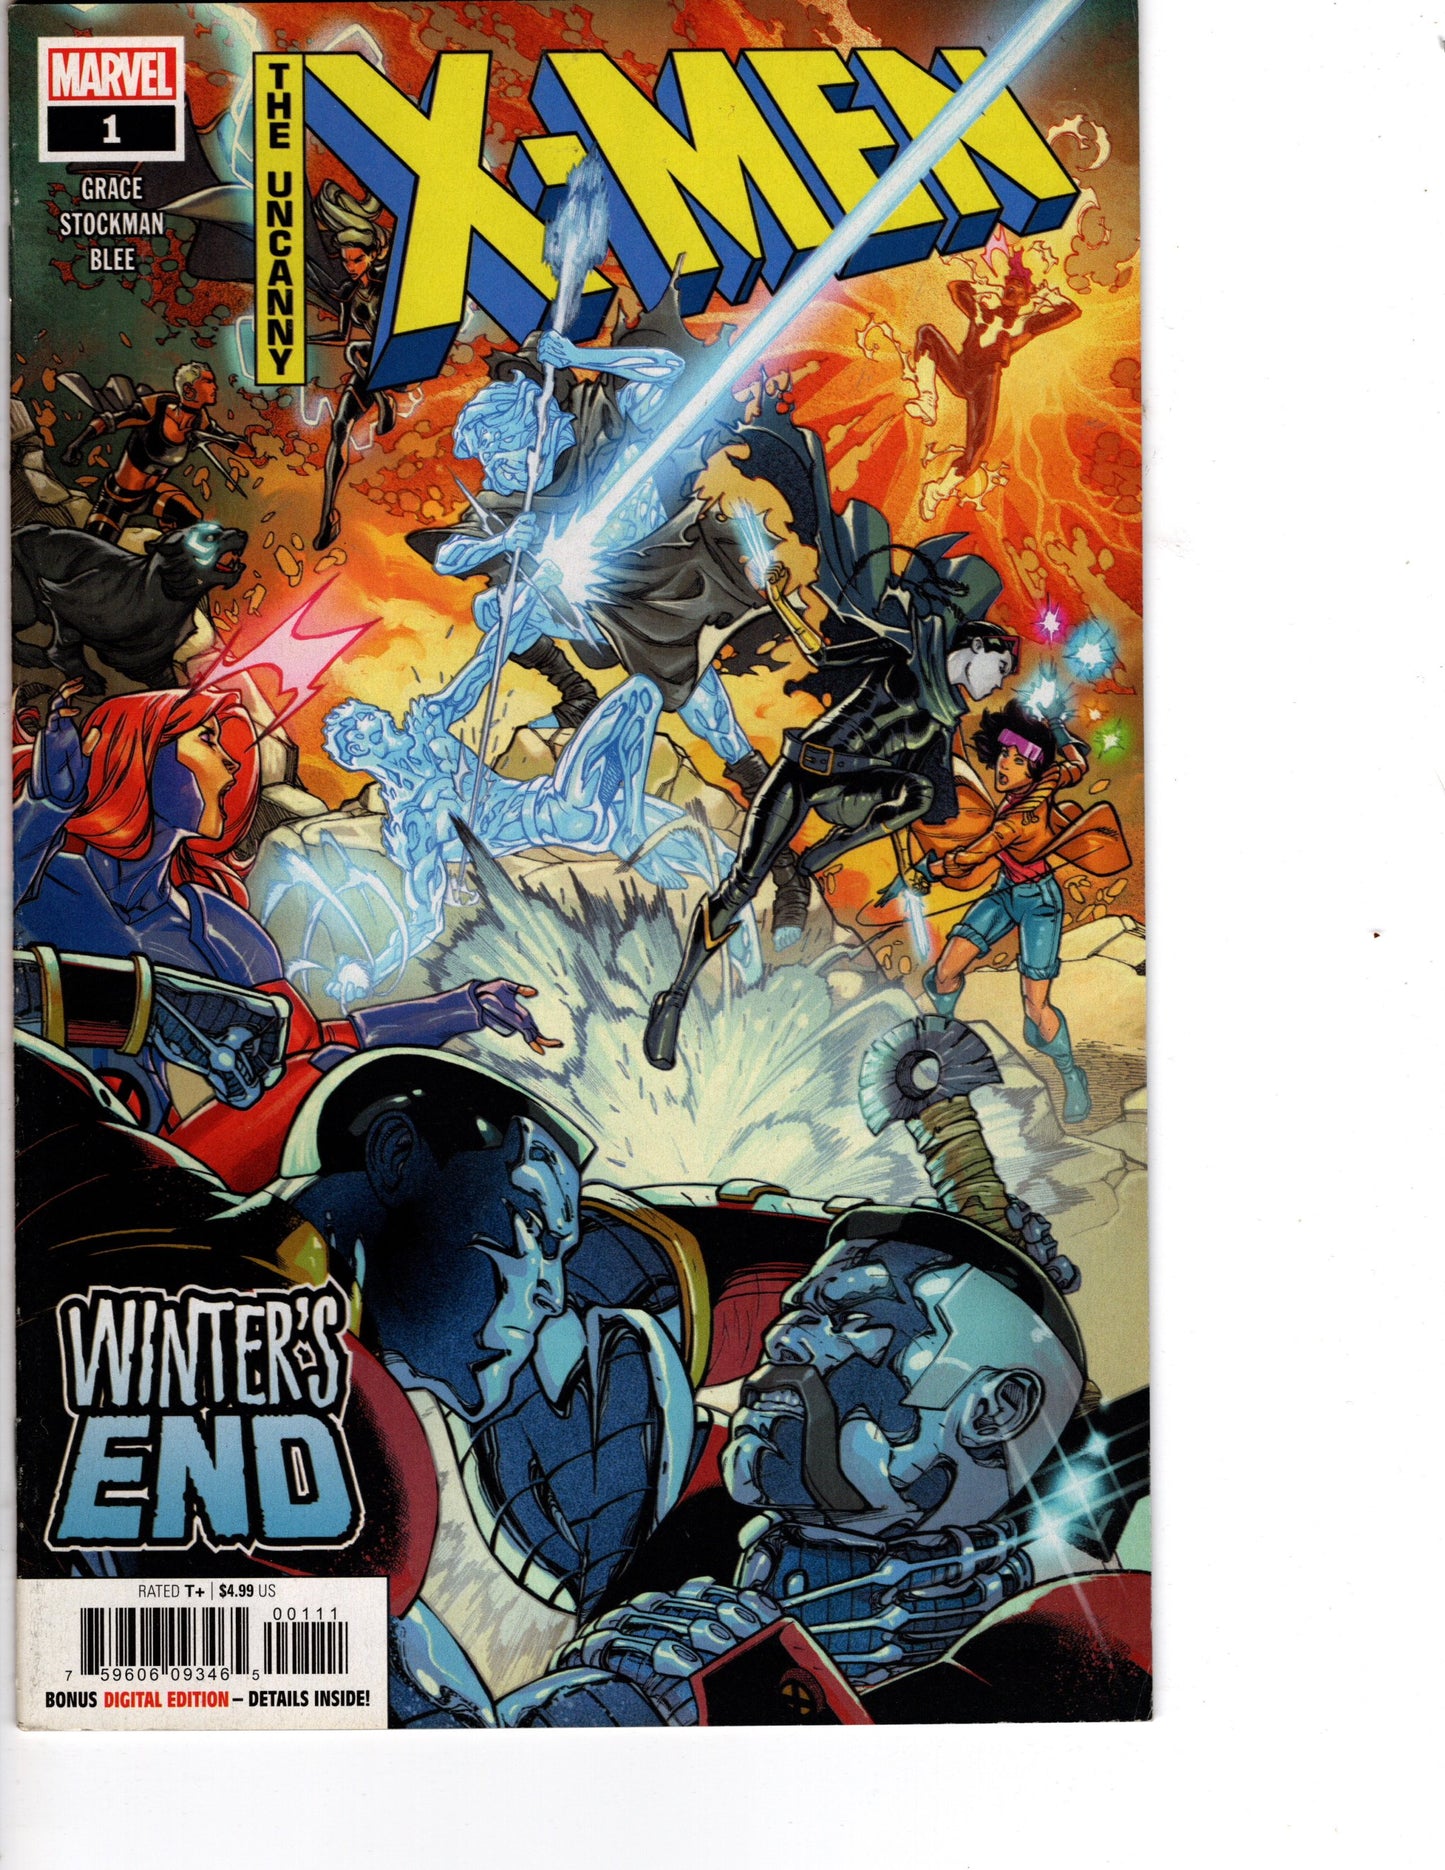 The Uncanny X-Men #1